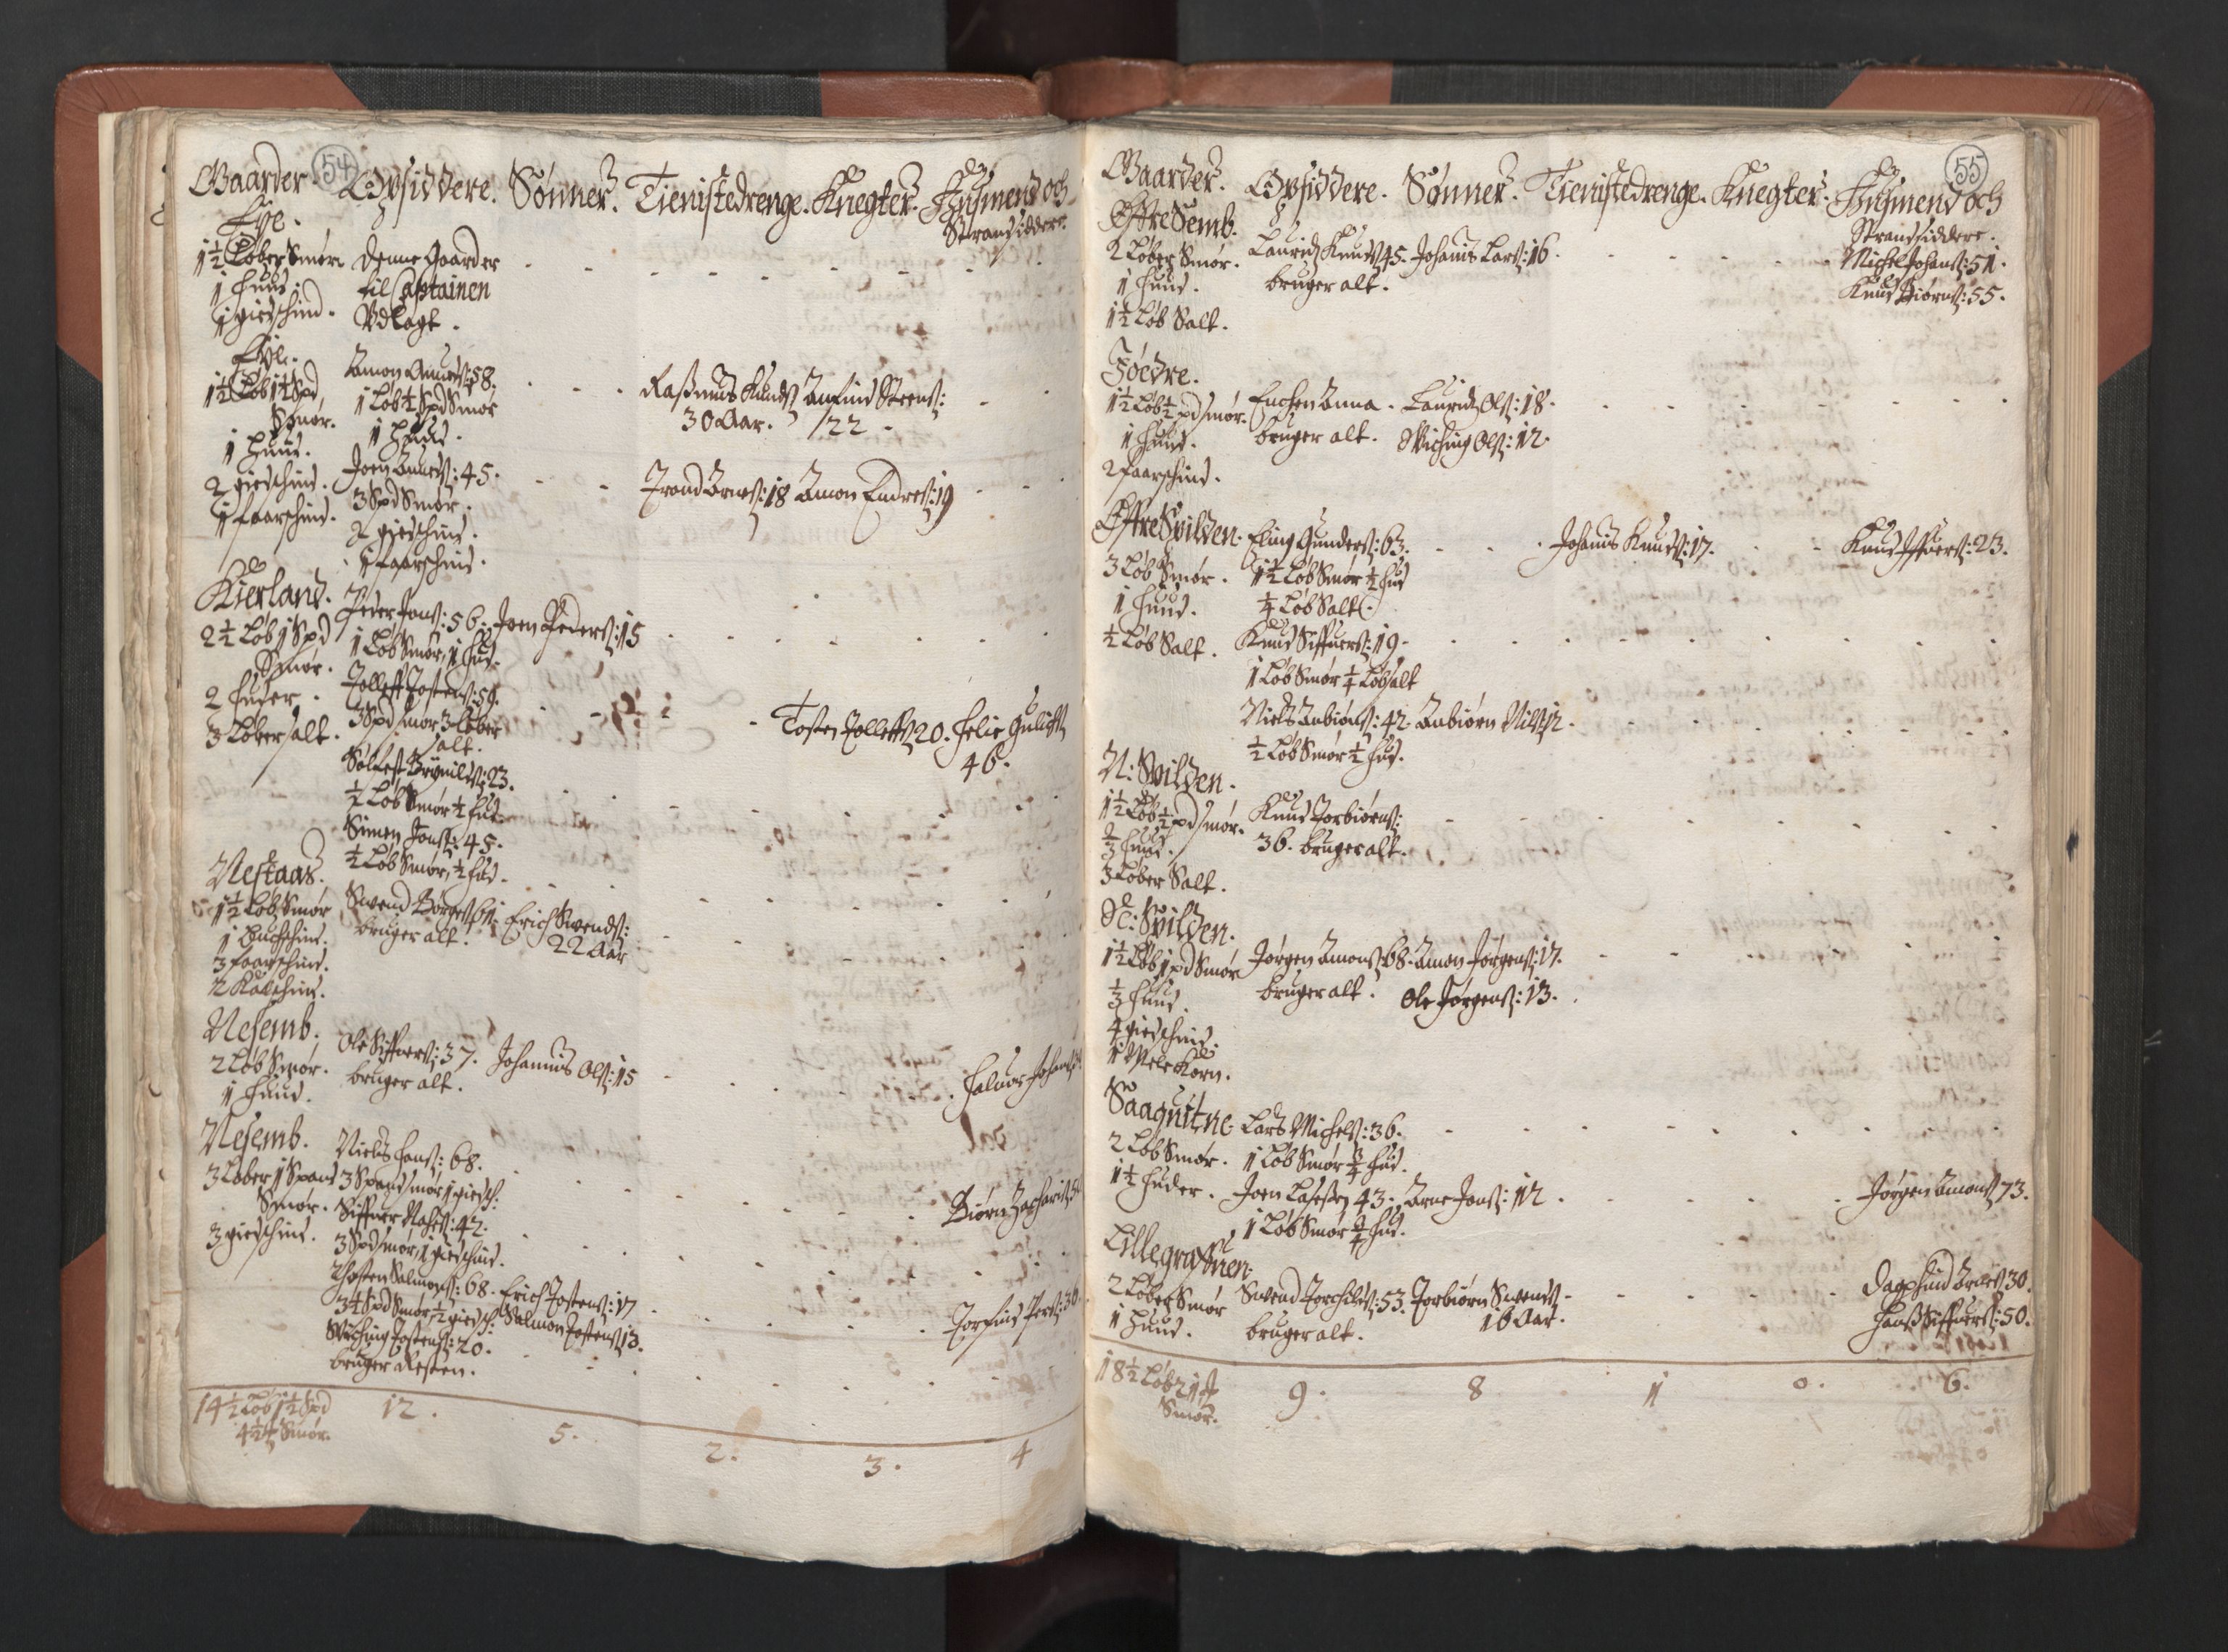 RA, Bailiff's Census 1664-1666, no. 14: Hardanger len, Ytre Sogn fogderi and Indre Sogn fogderi, 1664-1665, p. 54-55